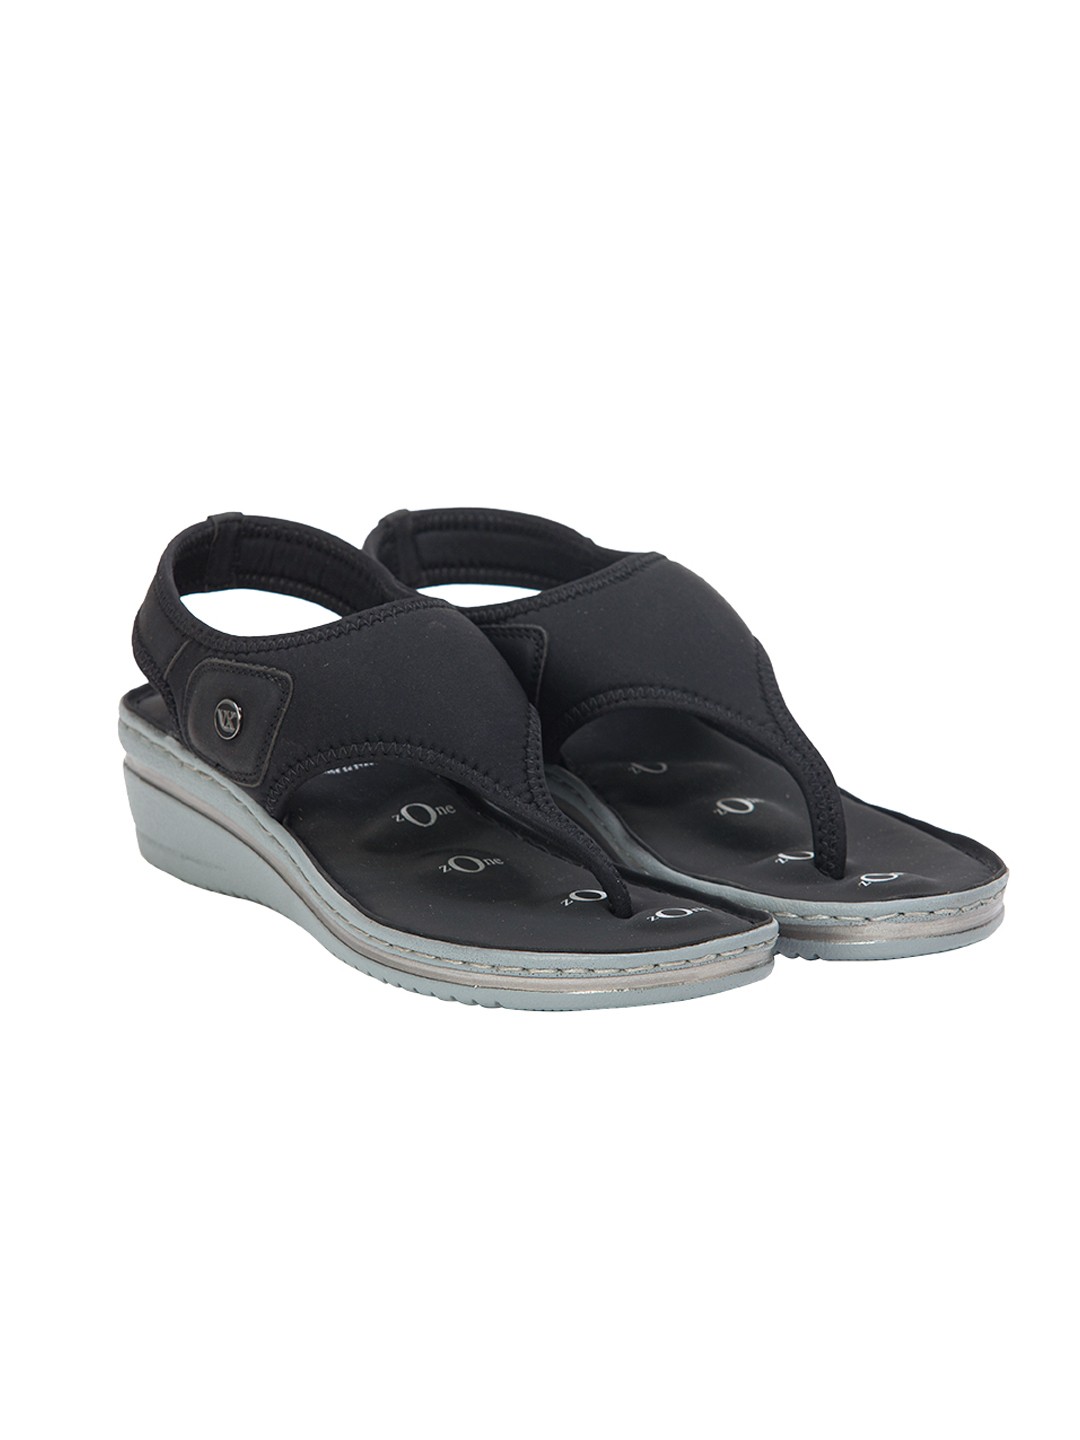 Buy Von Wellx Germany Comfort Della Black Sandals Online in Salalah